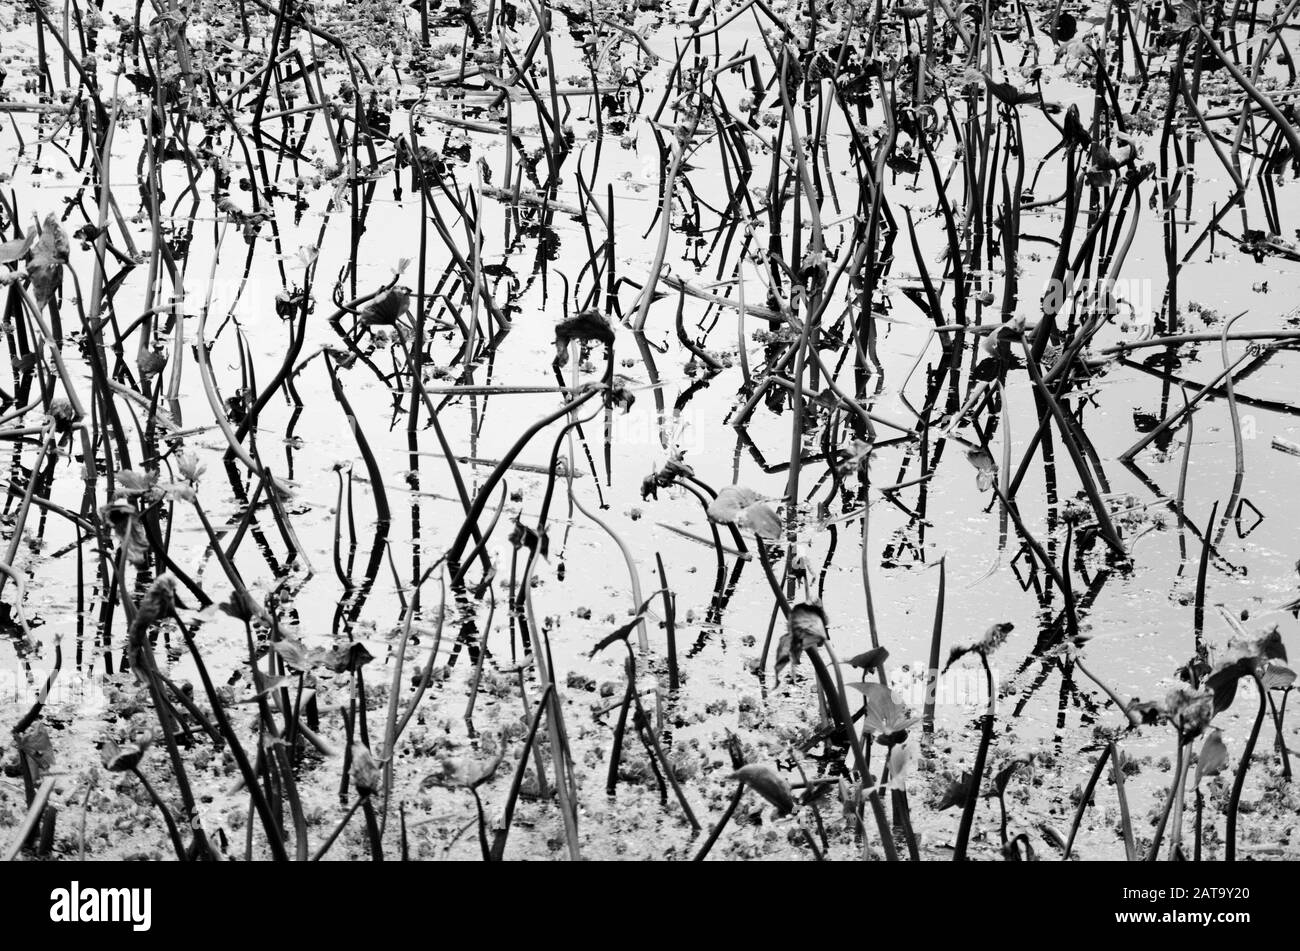 Astrazione della natura: Immagine in bianco e nero di una superficie acquatica con vegetazione e riflessi interessanti Foto Stock